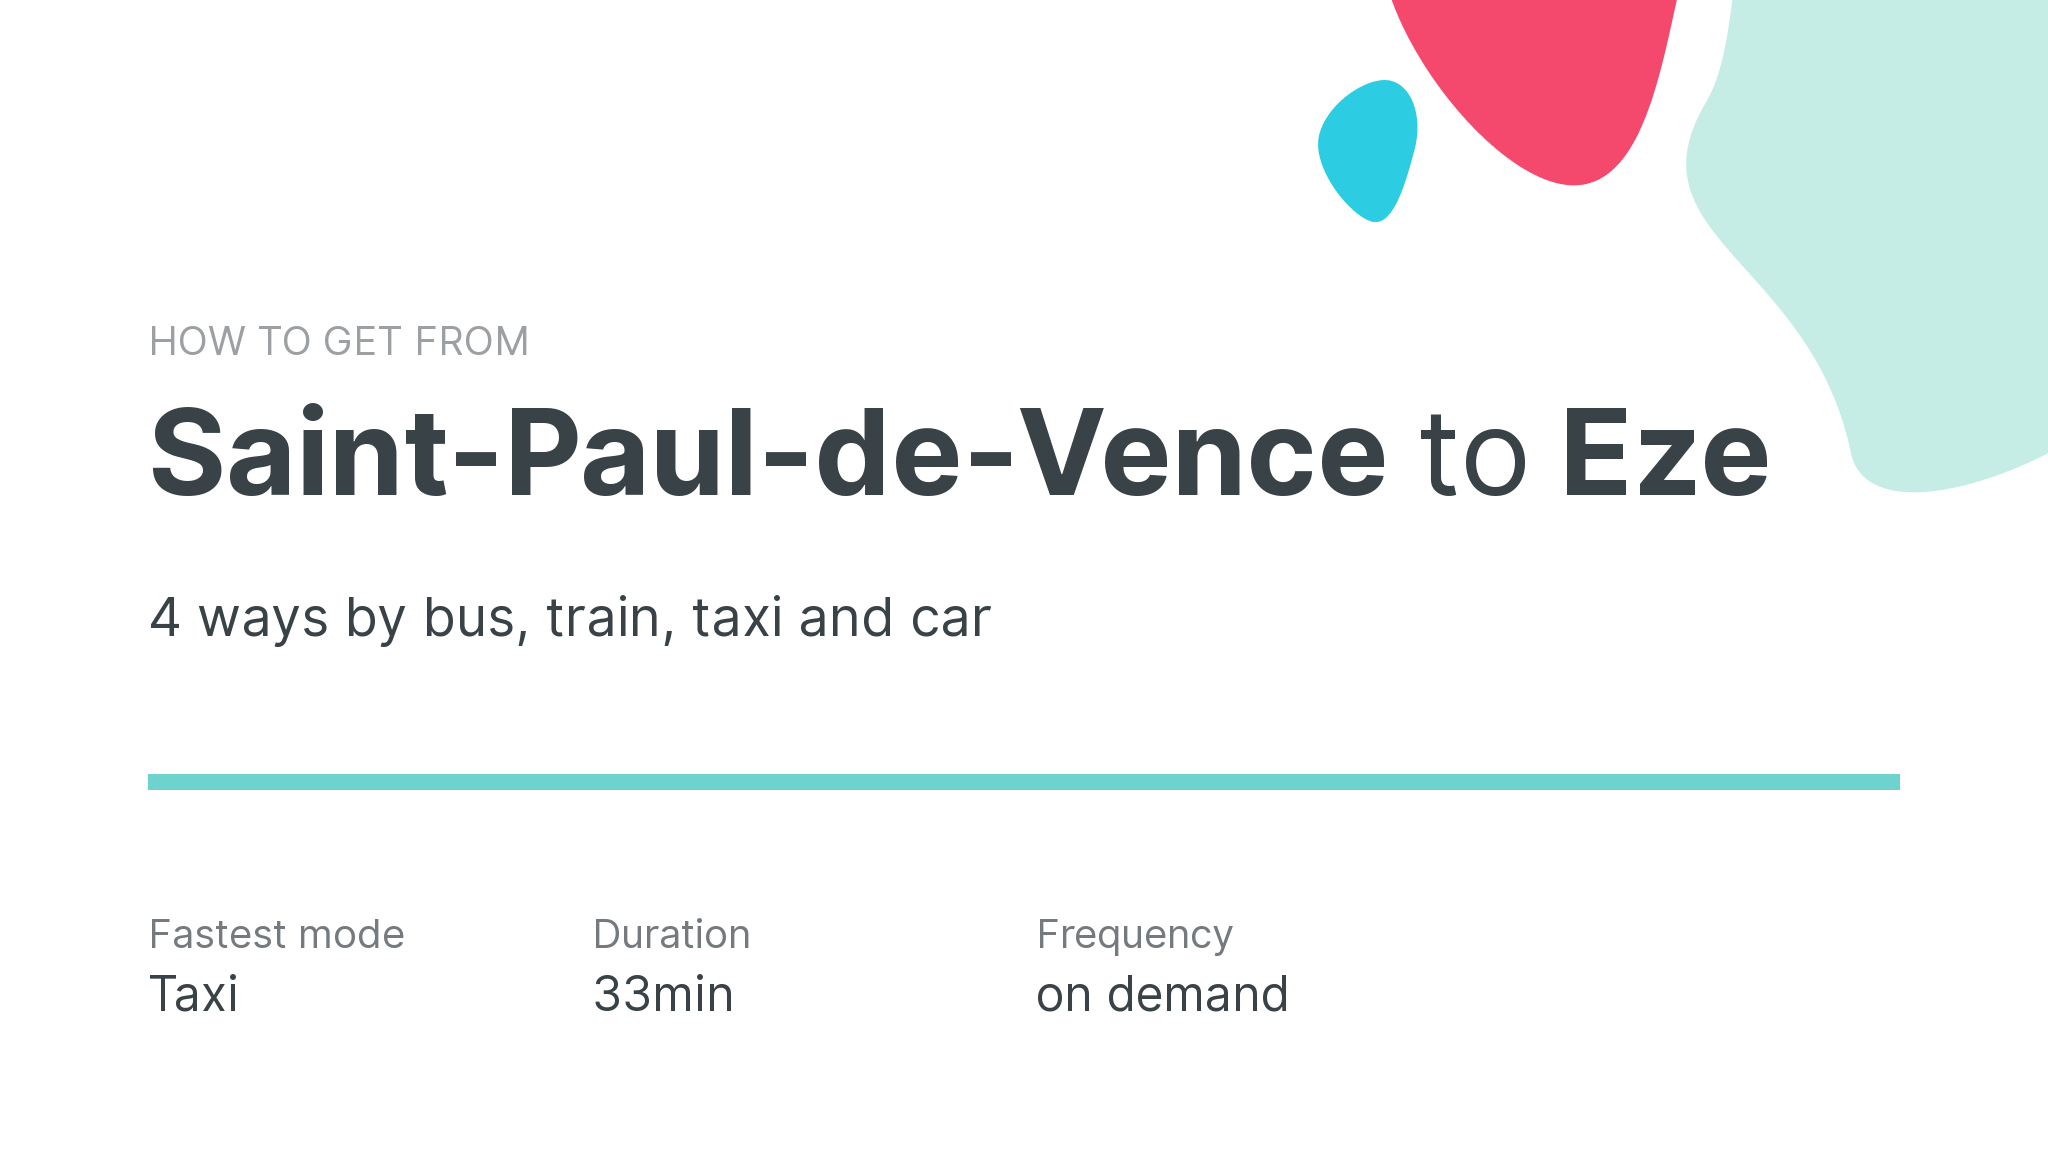 How do I get from Saint-Paul-de-Vence to Eze